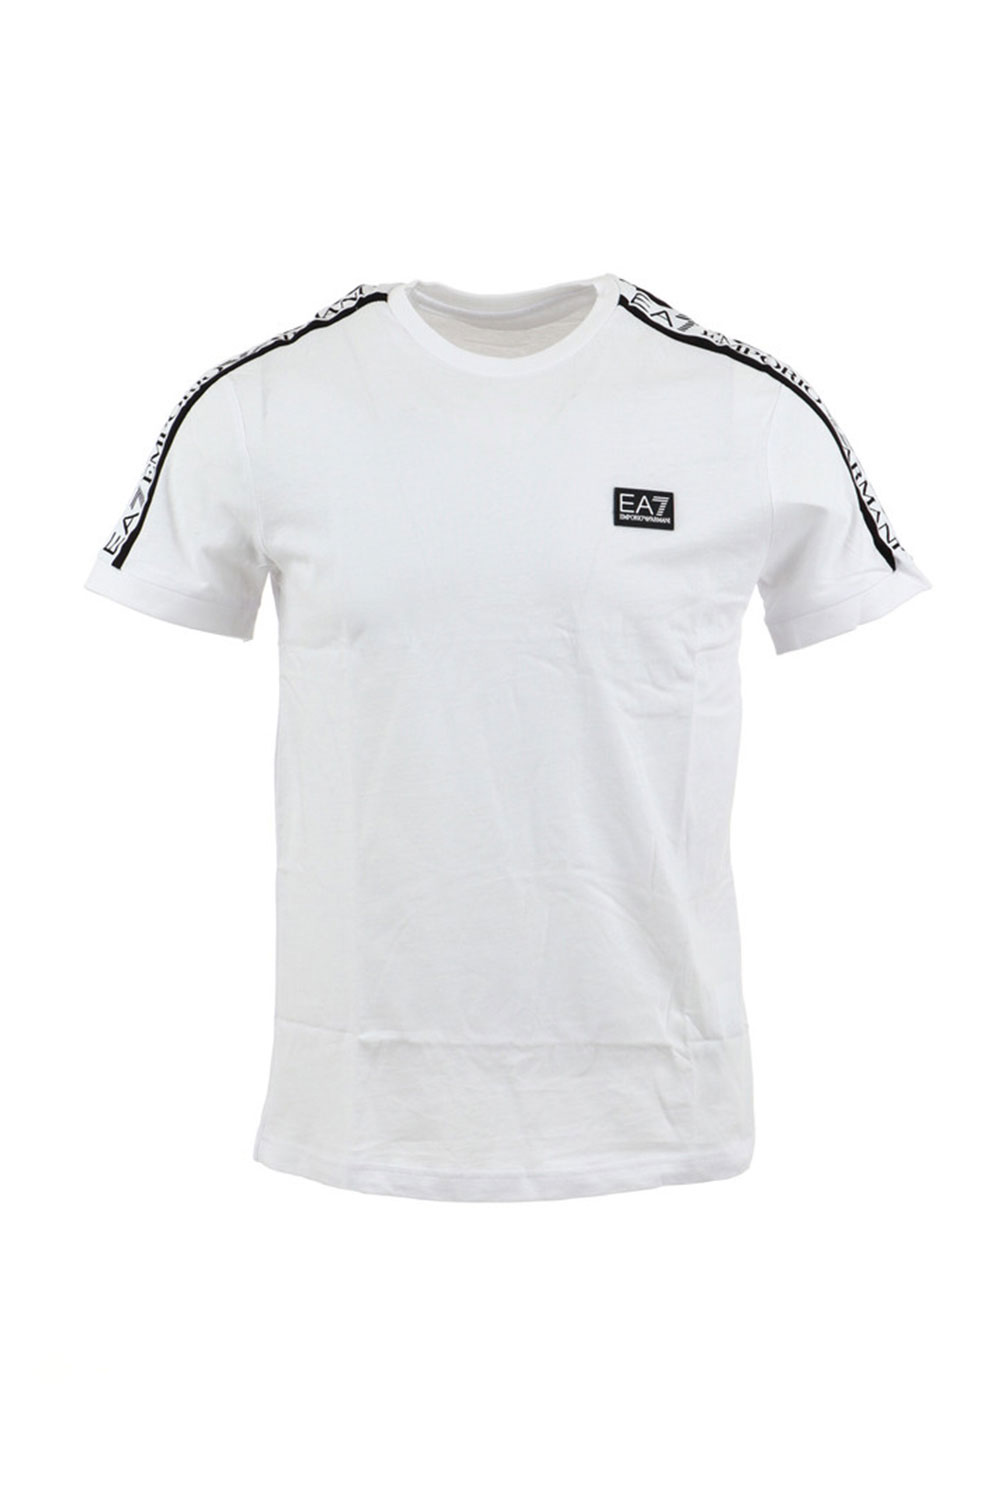 T-shirt EA7 mezze maniche Bianco